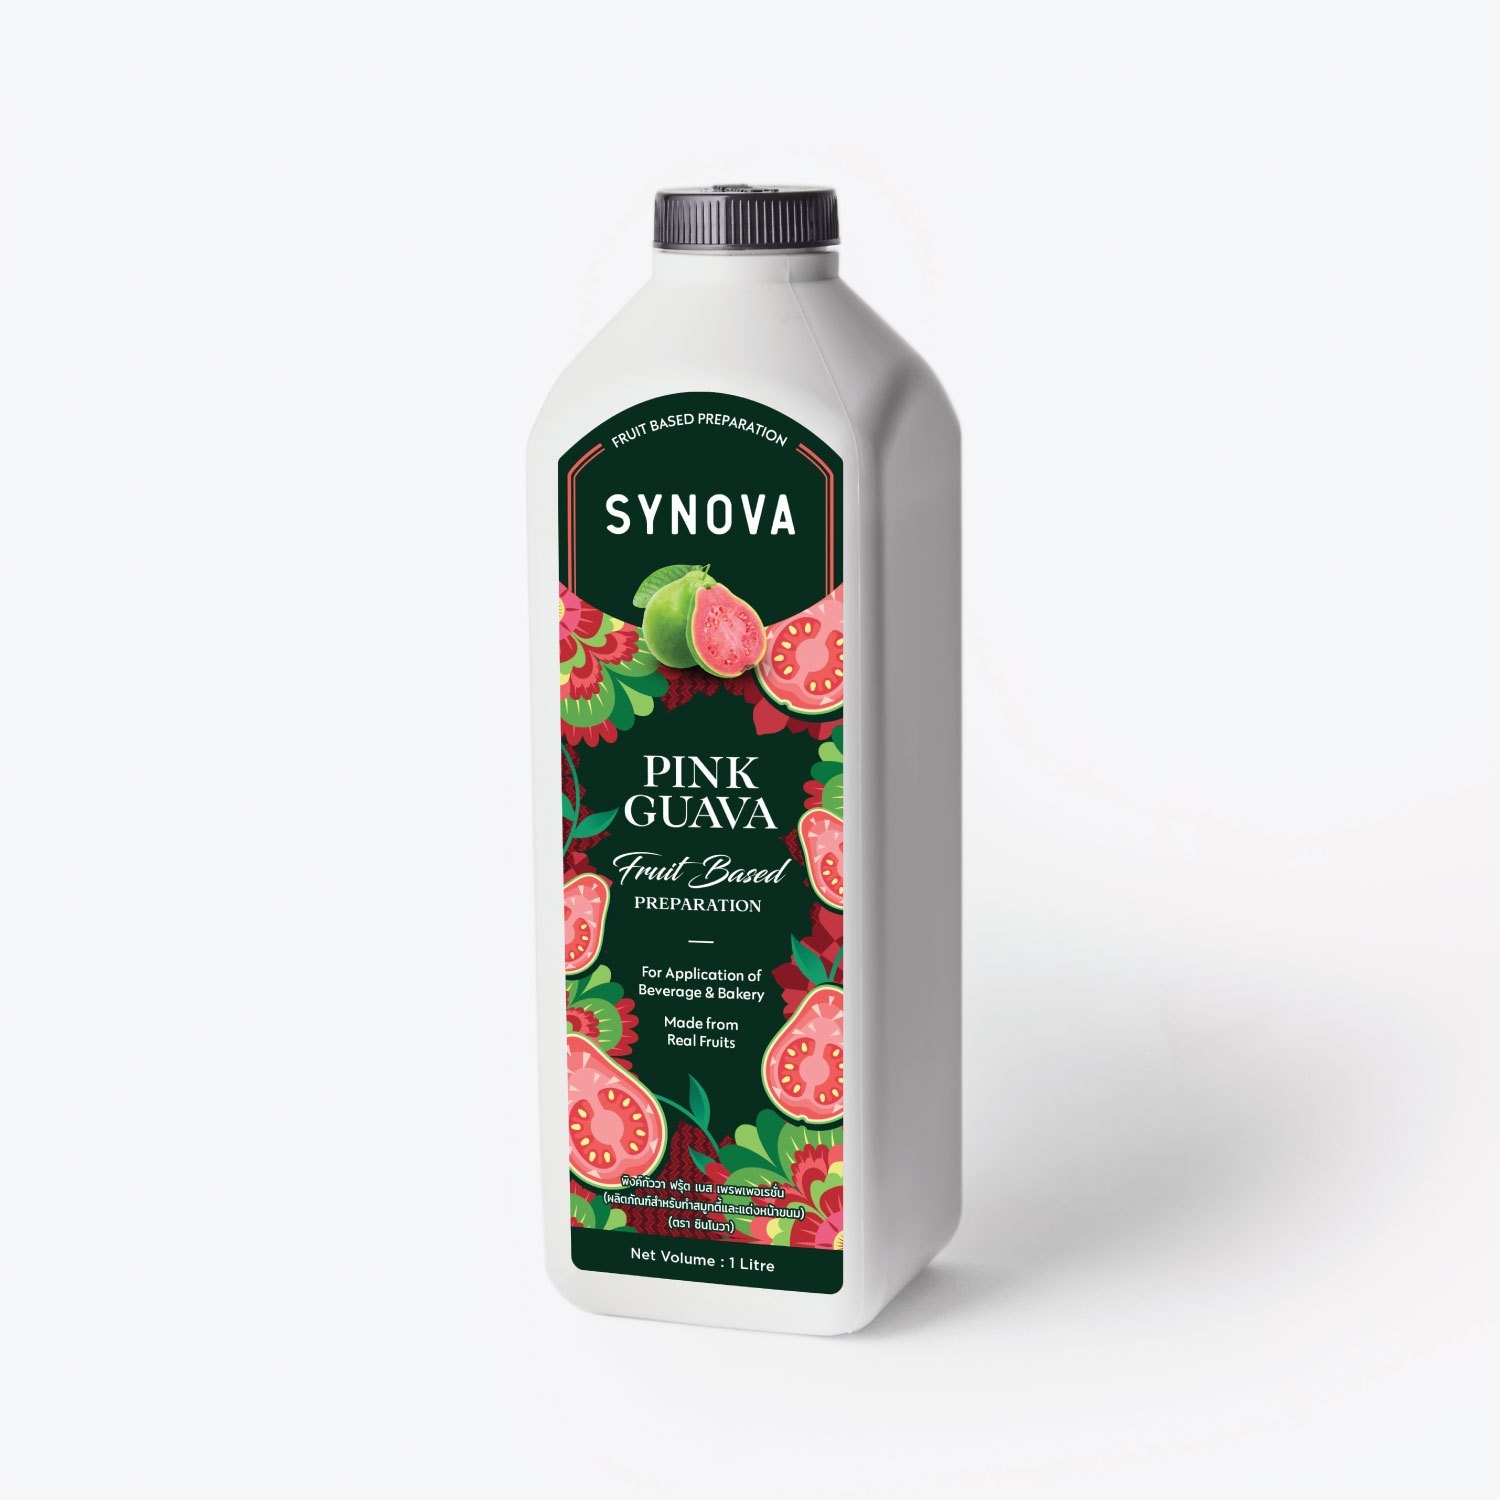 SYNOVA Pink Guava Fruit Based Preparation (Bottle)